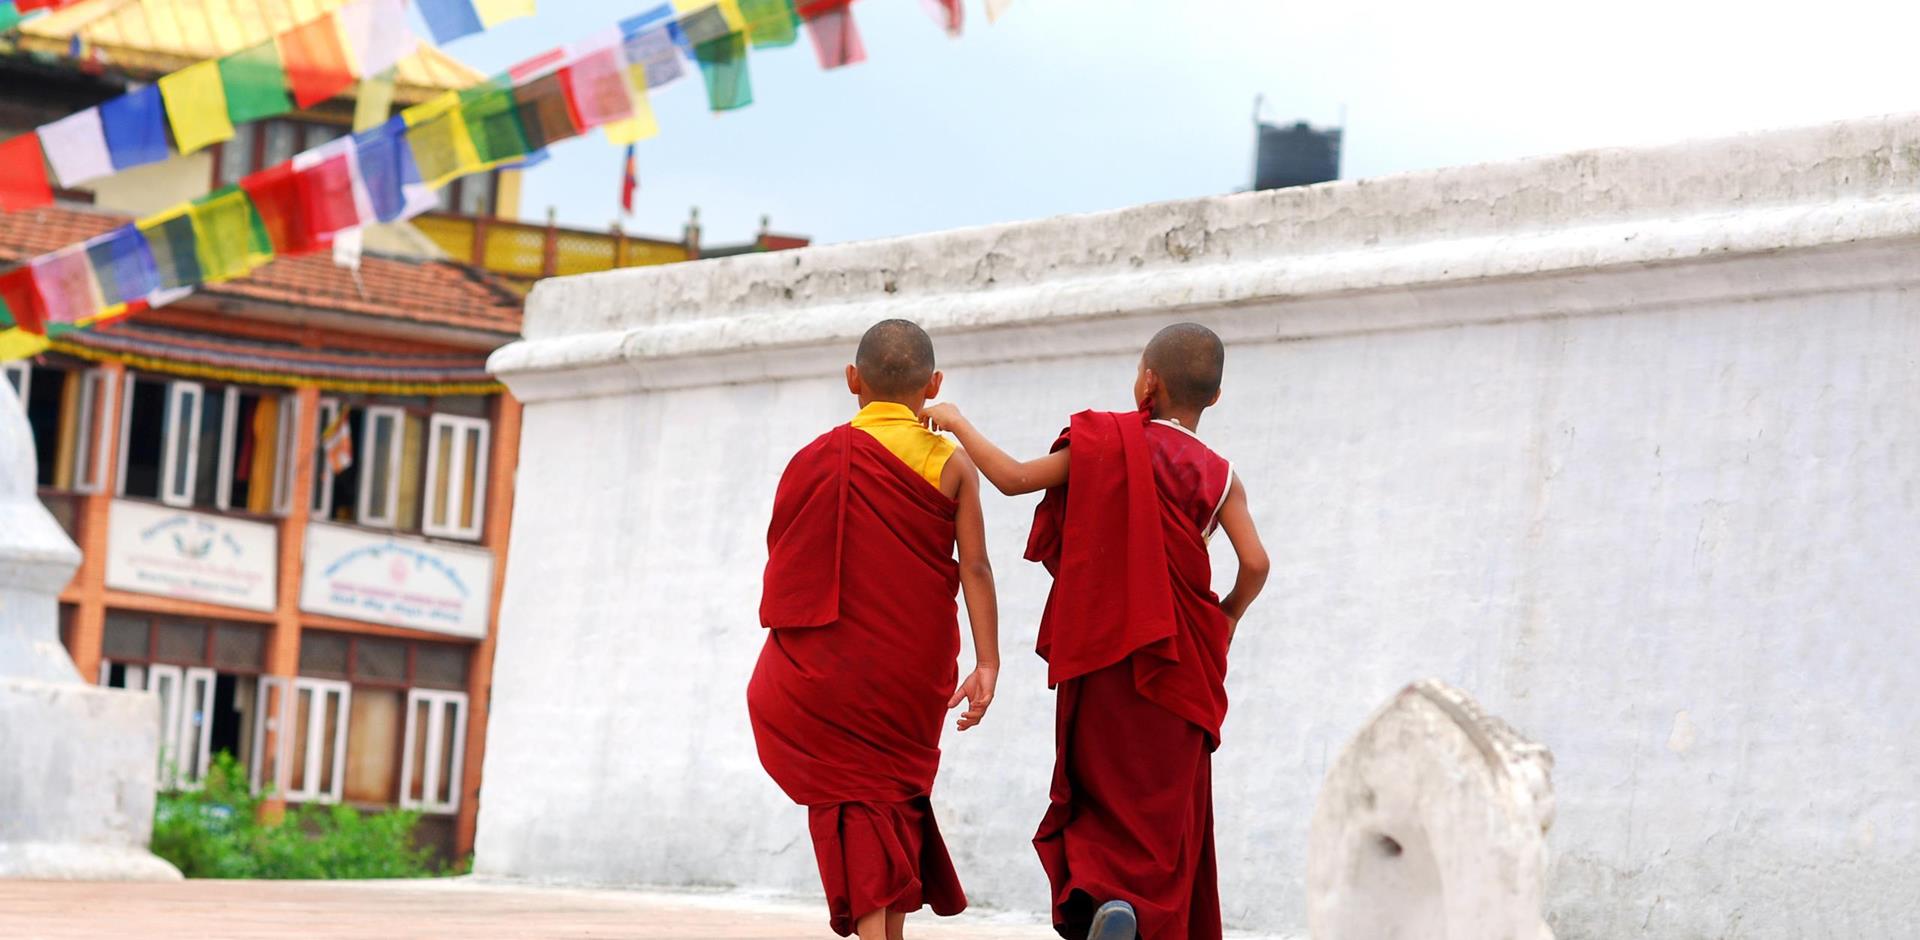 Tibet, Asia